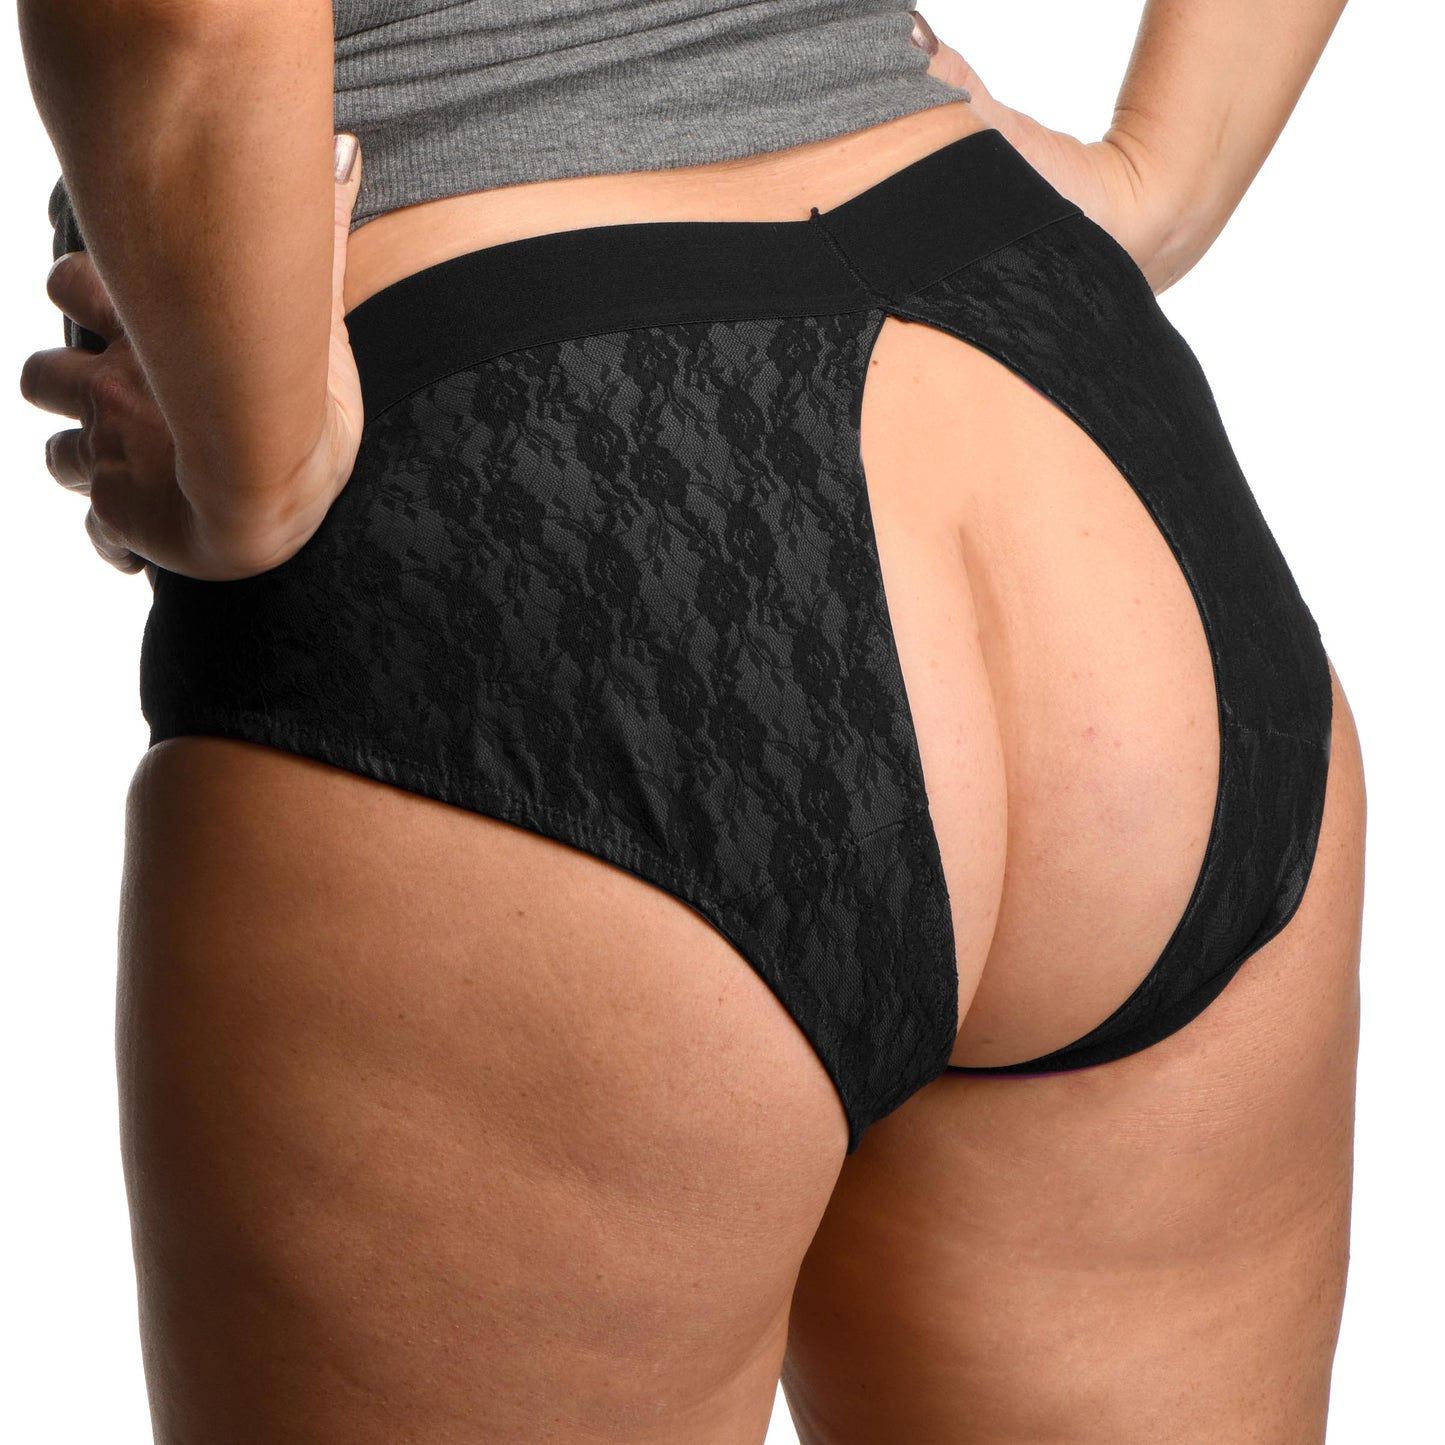 Lace Envy Black Crotchless Panty Harness - 3XL - UABDSM